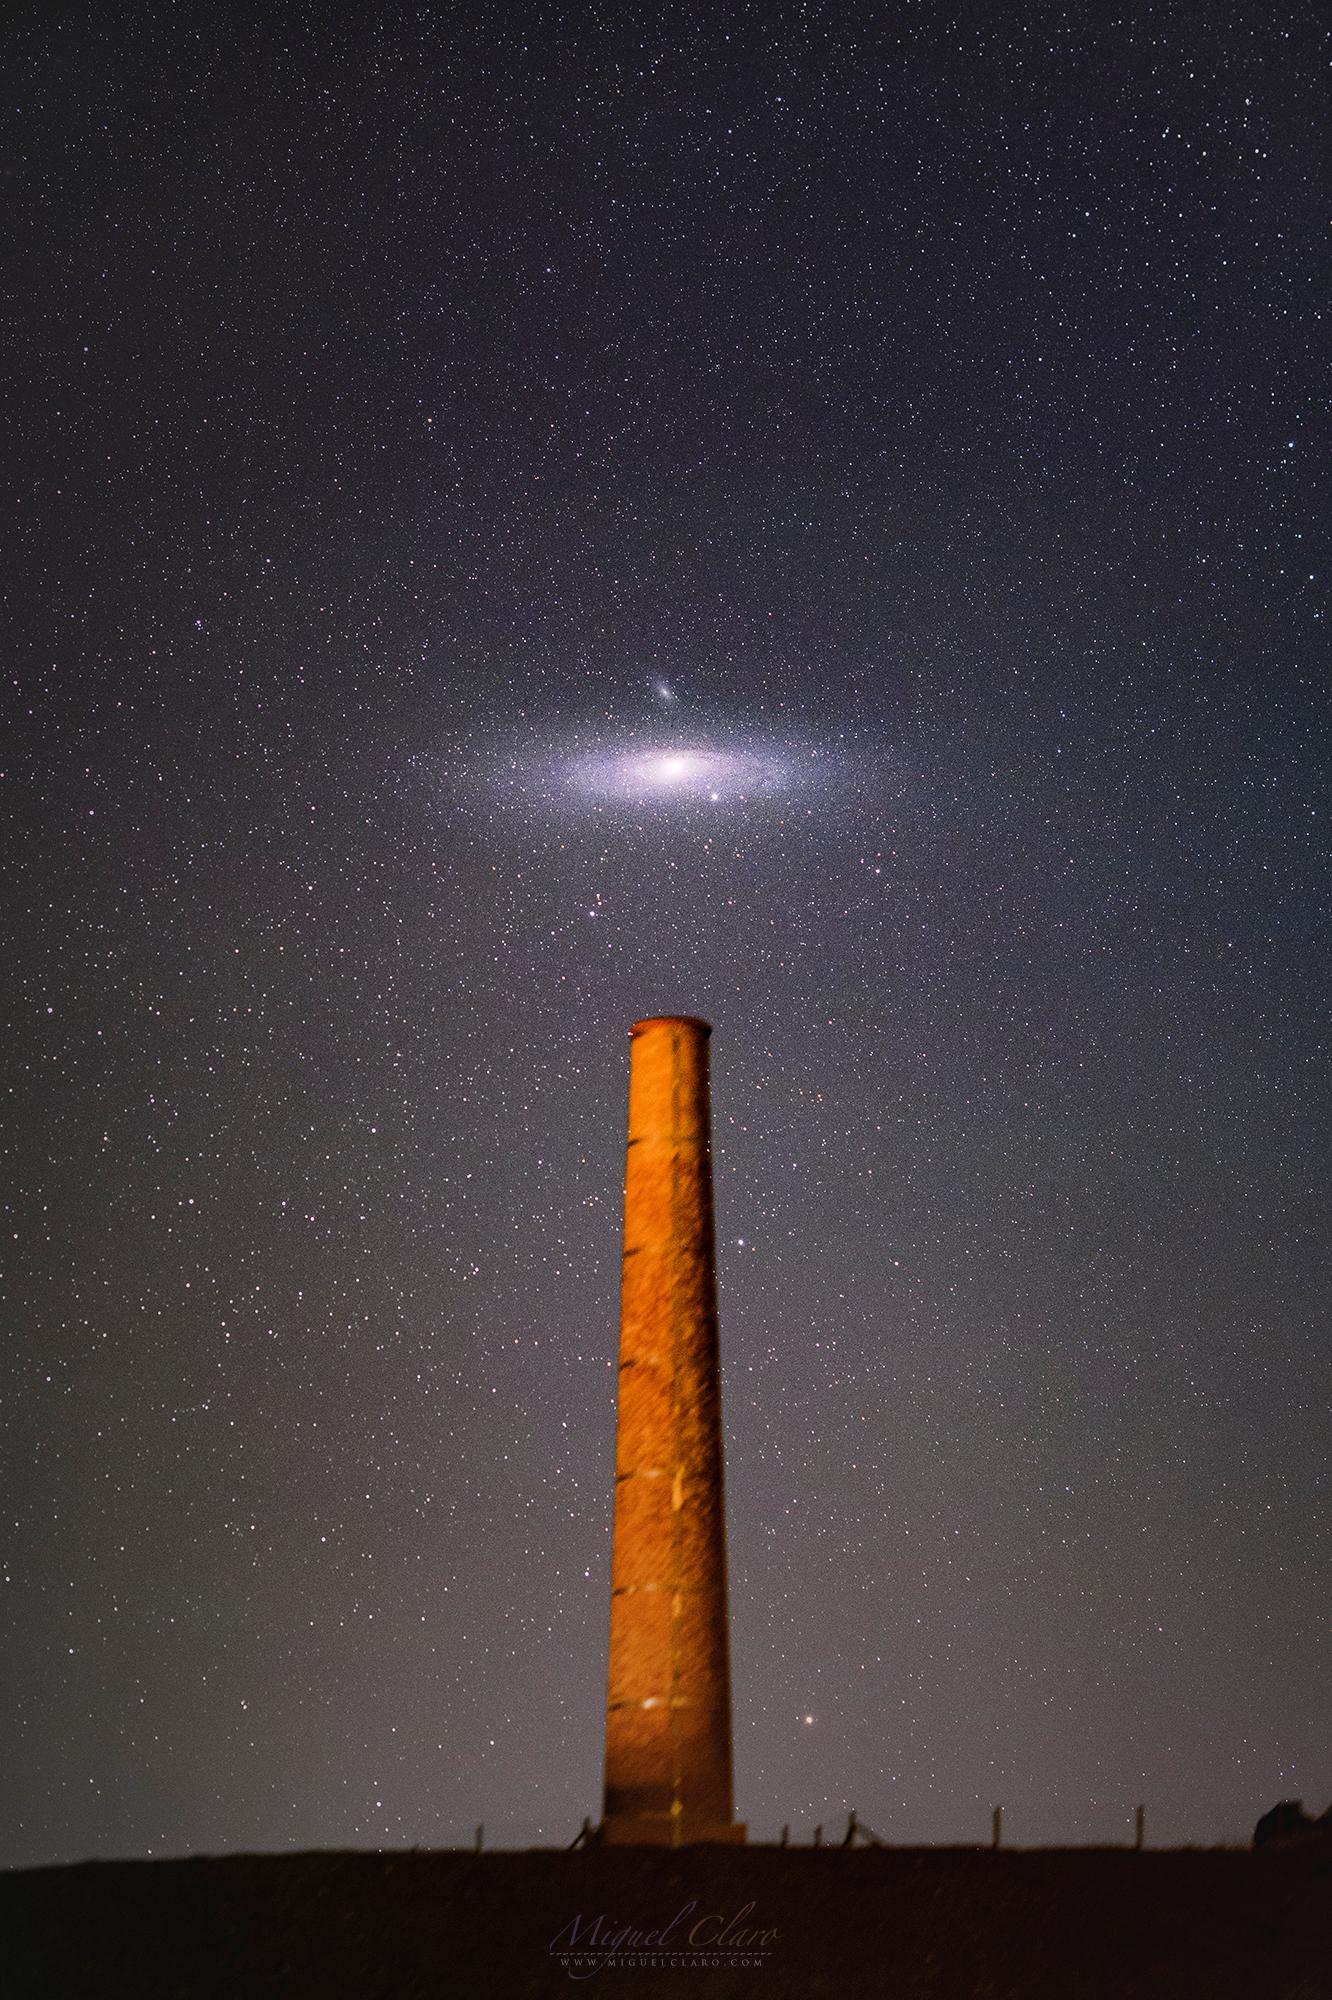 مجرّة حلزونيّة ضخمة في سماء الليل المرصّعة بالنجوم تتموضع مباشرة فوق مدخنة طويلة.